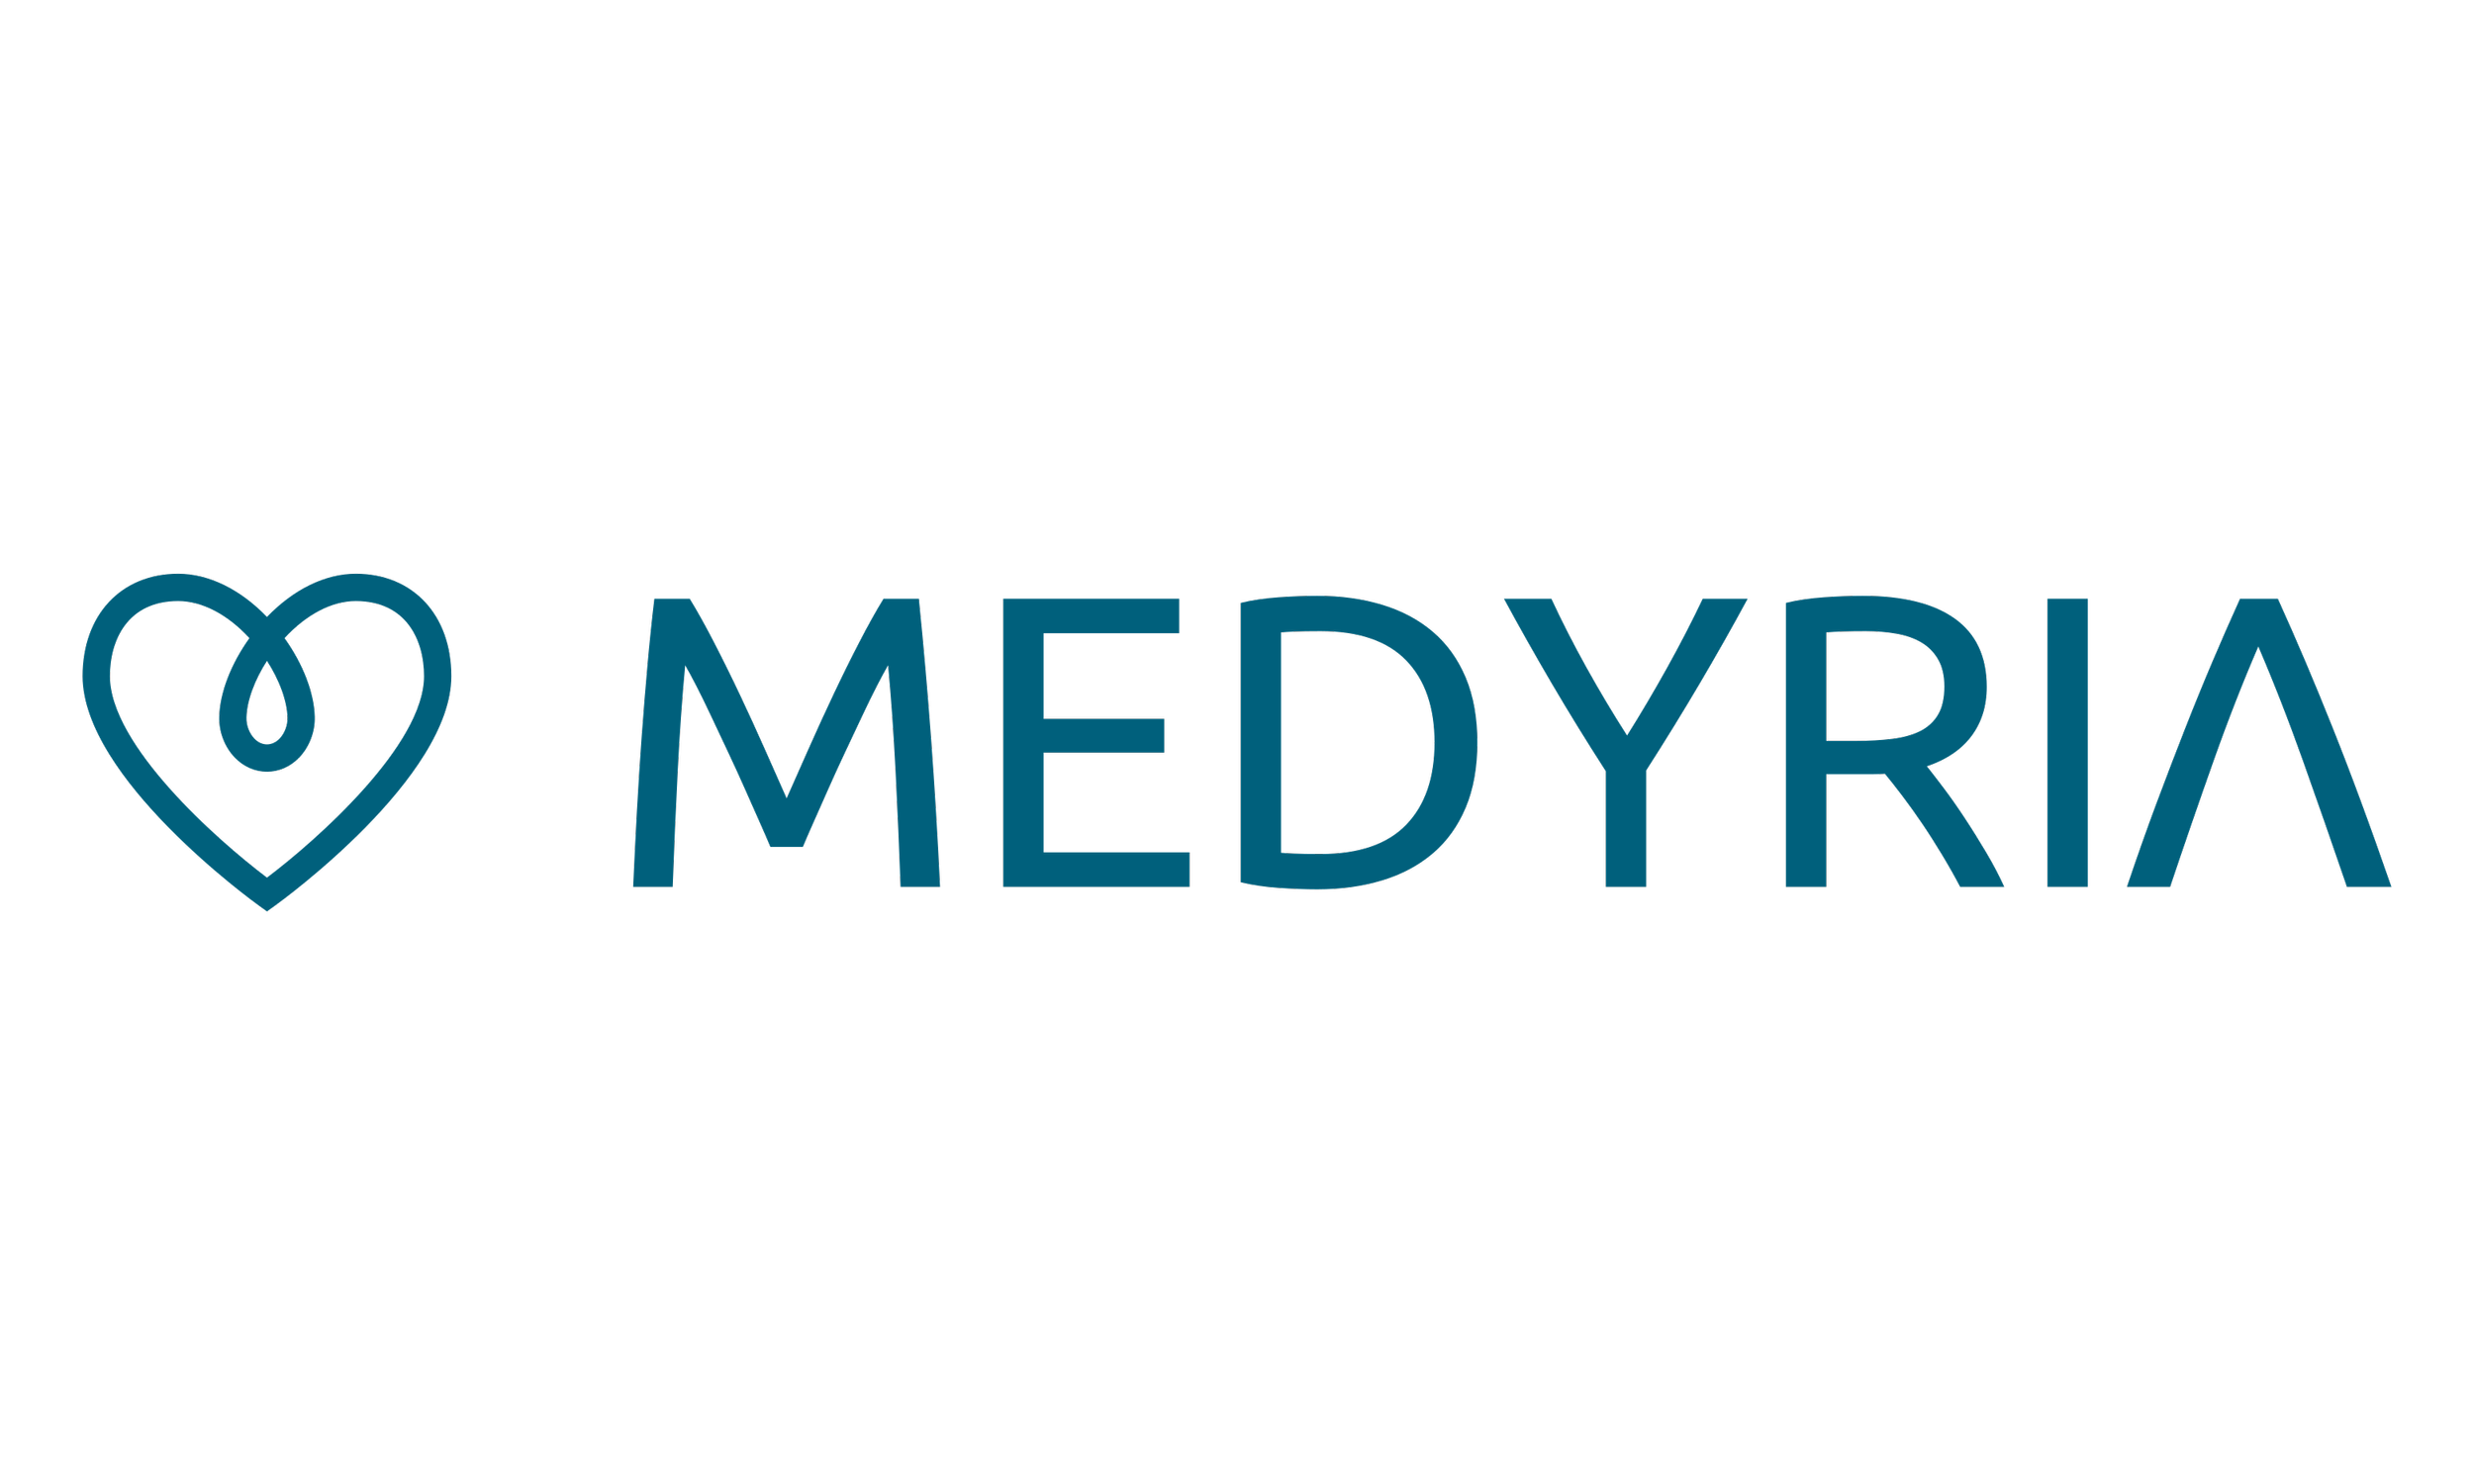 Medyria logo.png